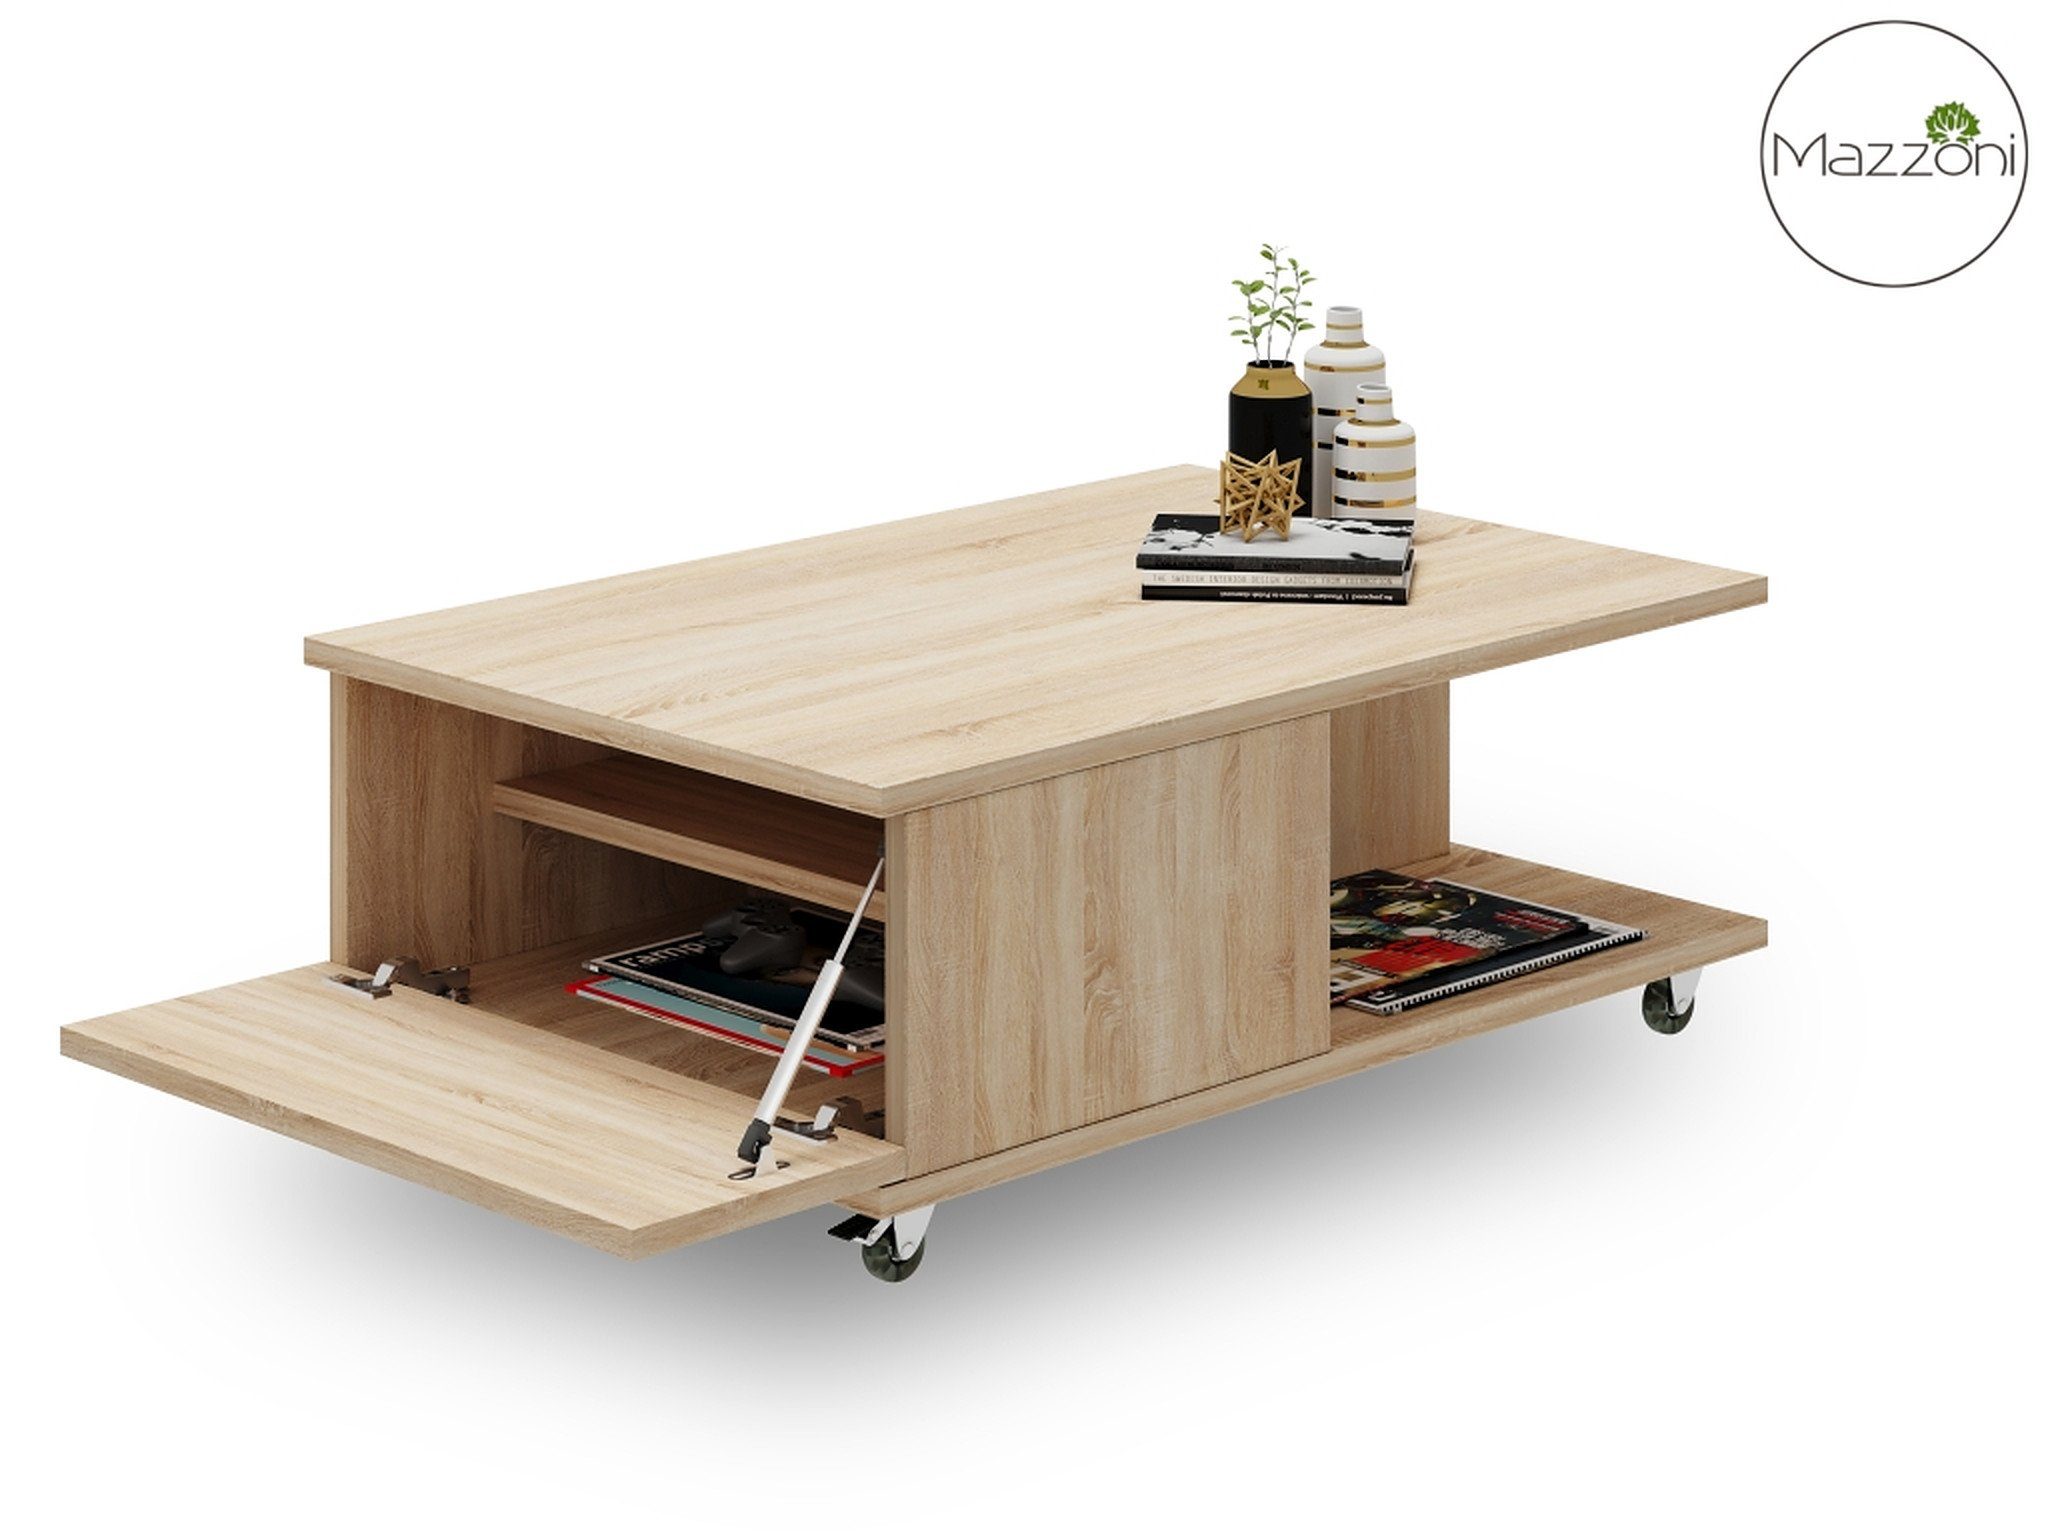 90x60x38cm Vienna Couchtisch Wohnzimmertisch Rollen mit Eiche Tisch Design Mazzoni Sonoma